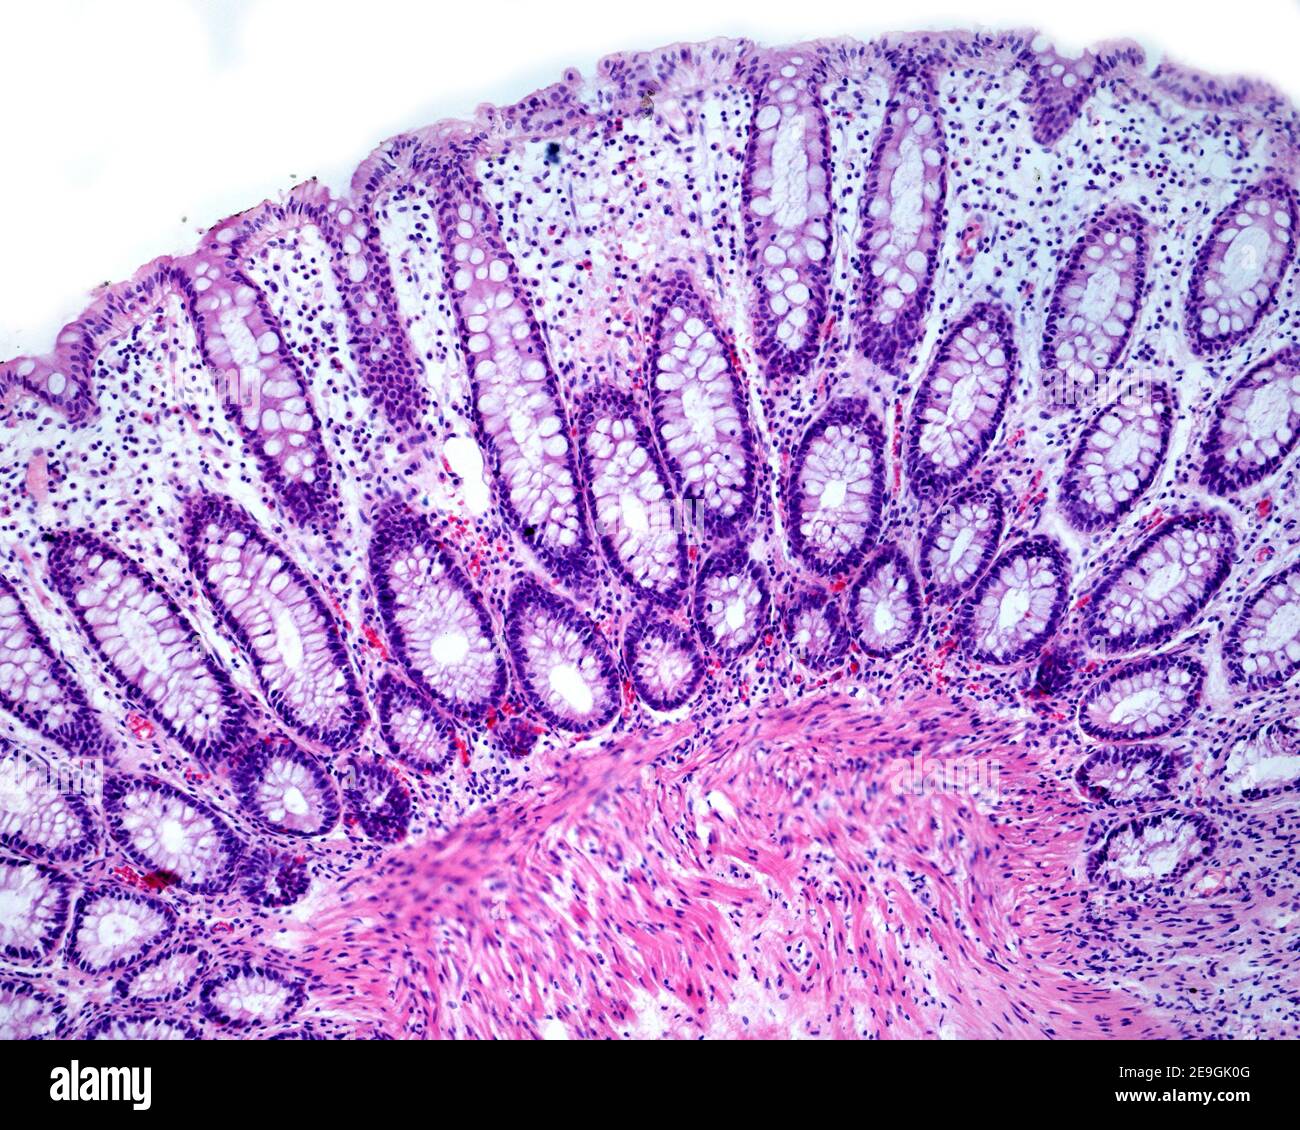 Lieberkühn criptas de una mucosa humana del colon que muestran abundantes células de los goblet del citoplasma pálido. Foto de stock